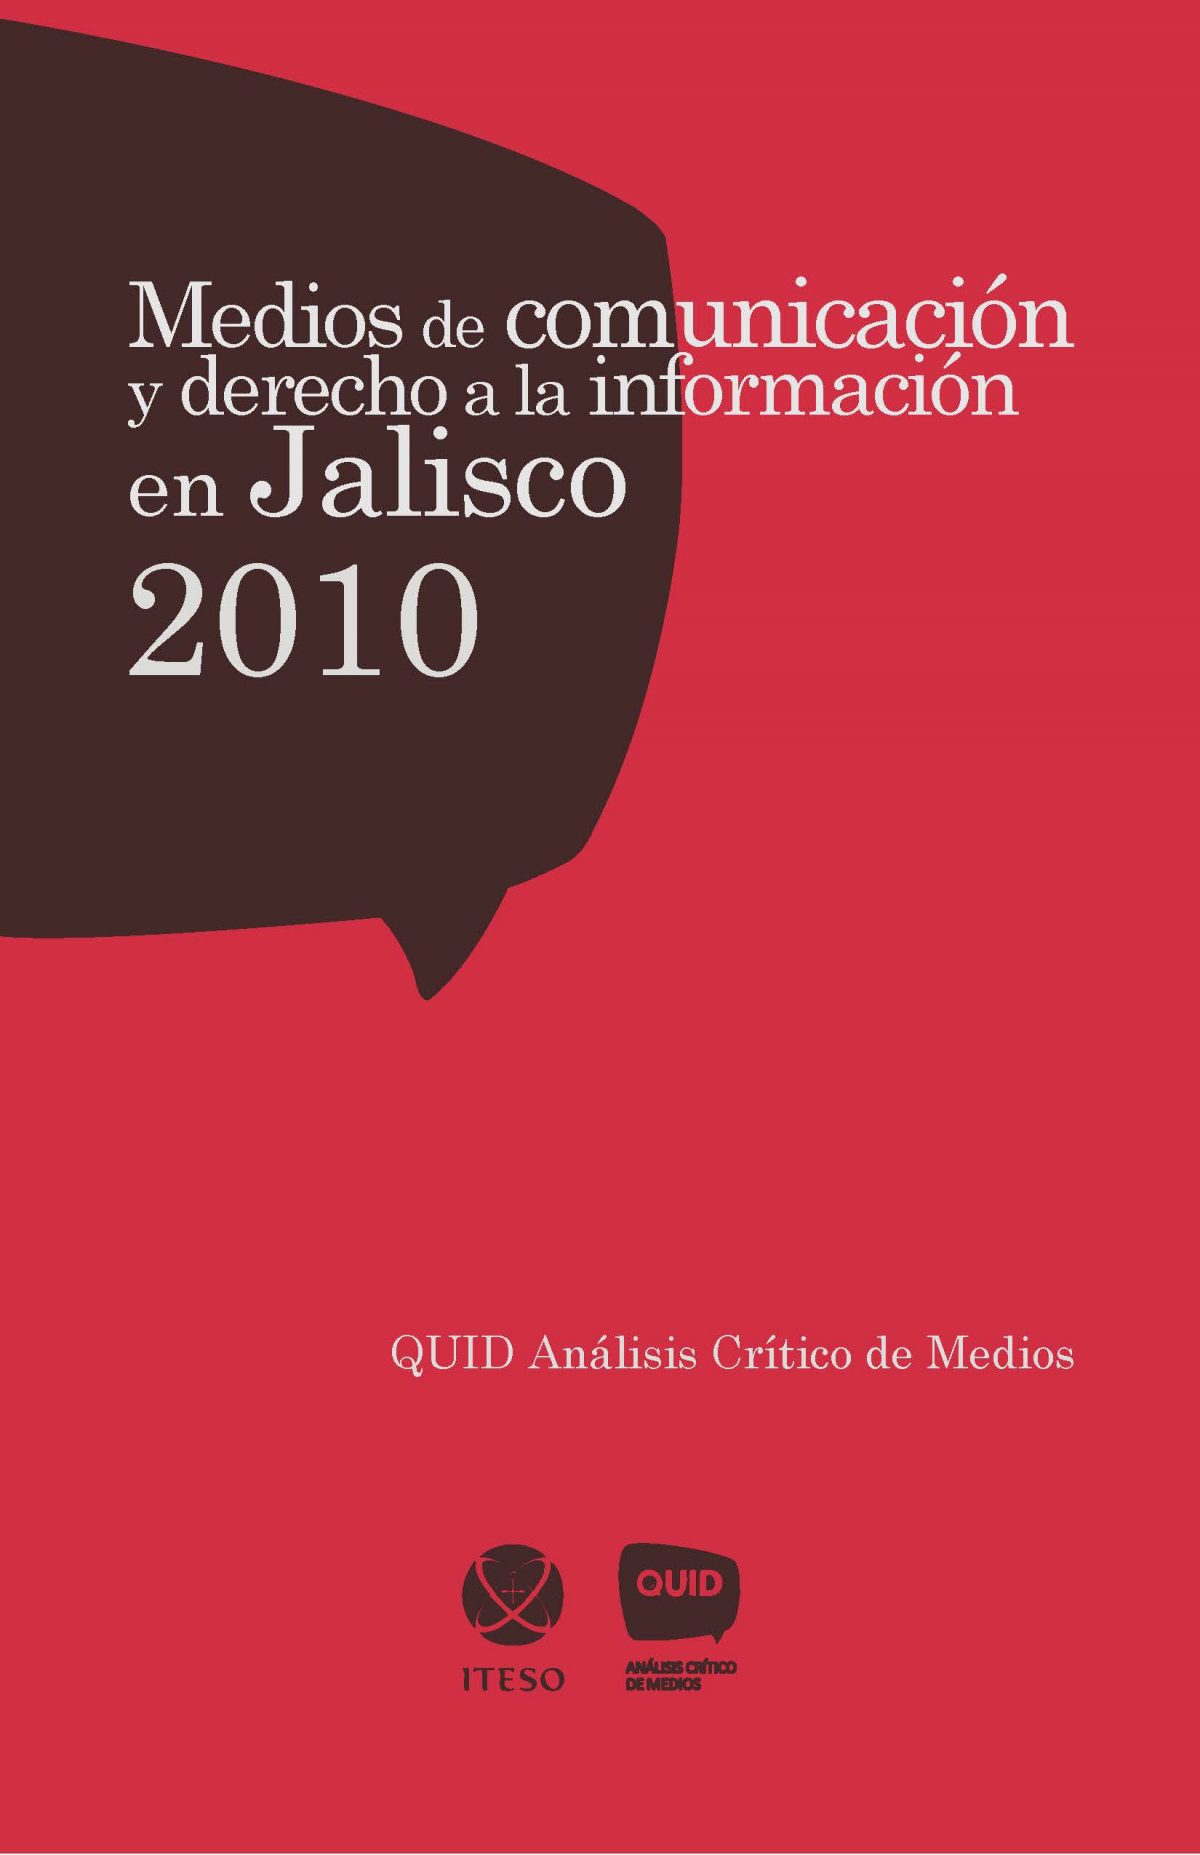 Medios de comunicación y derecho a la información en Jalisco, 2010